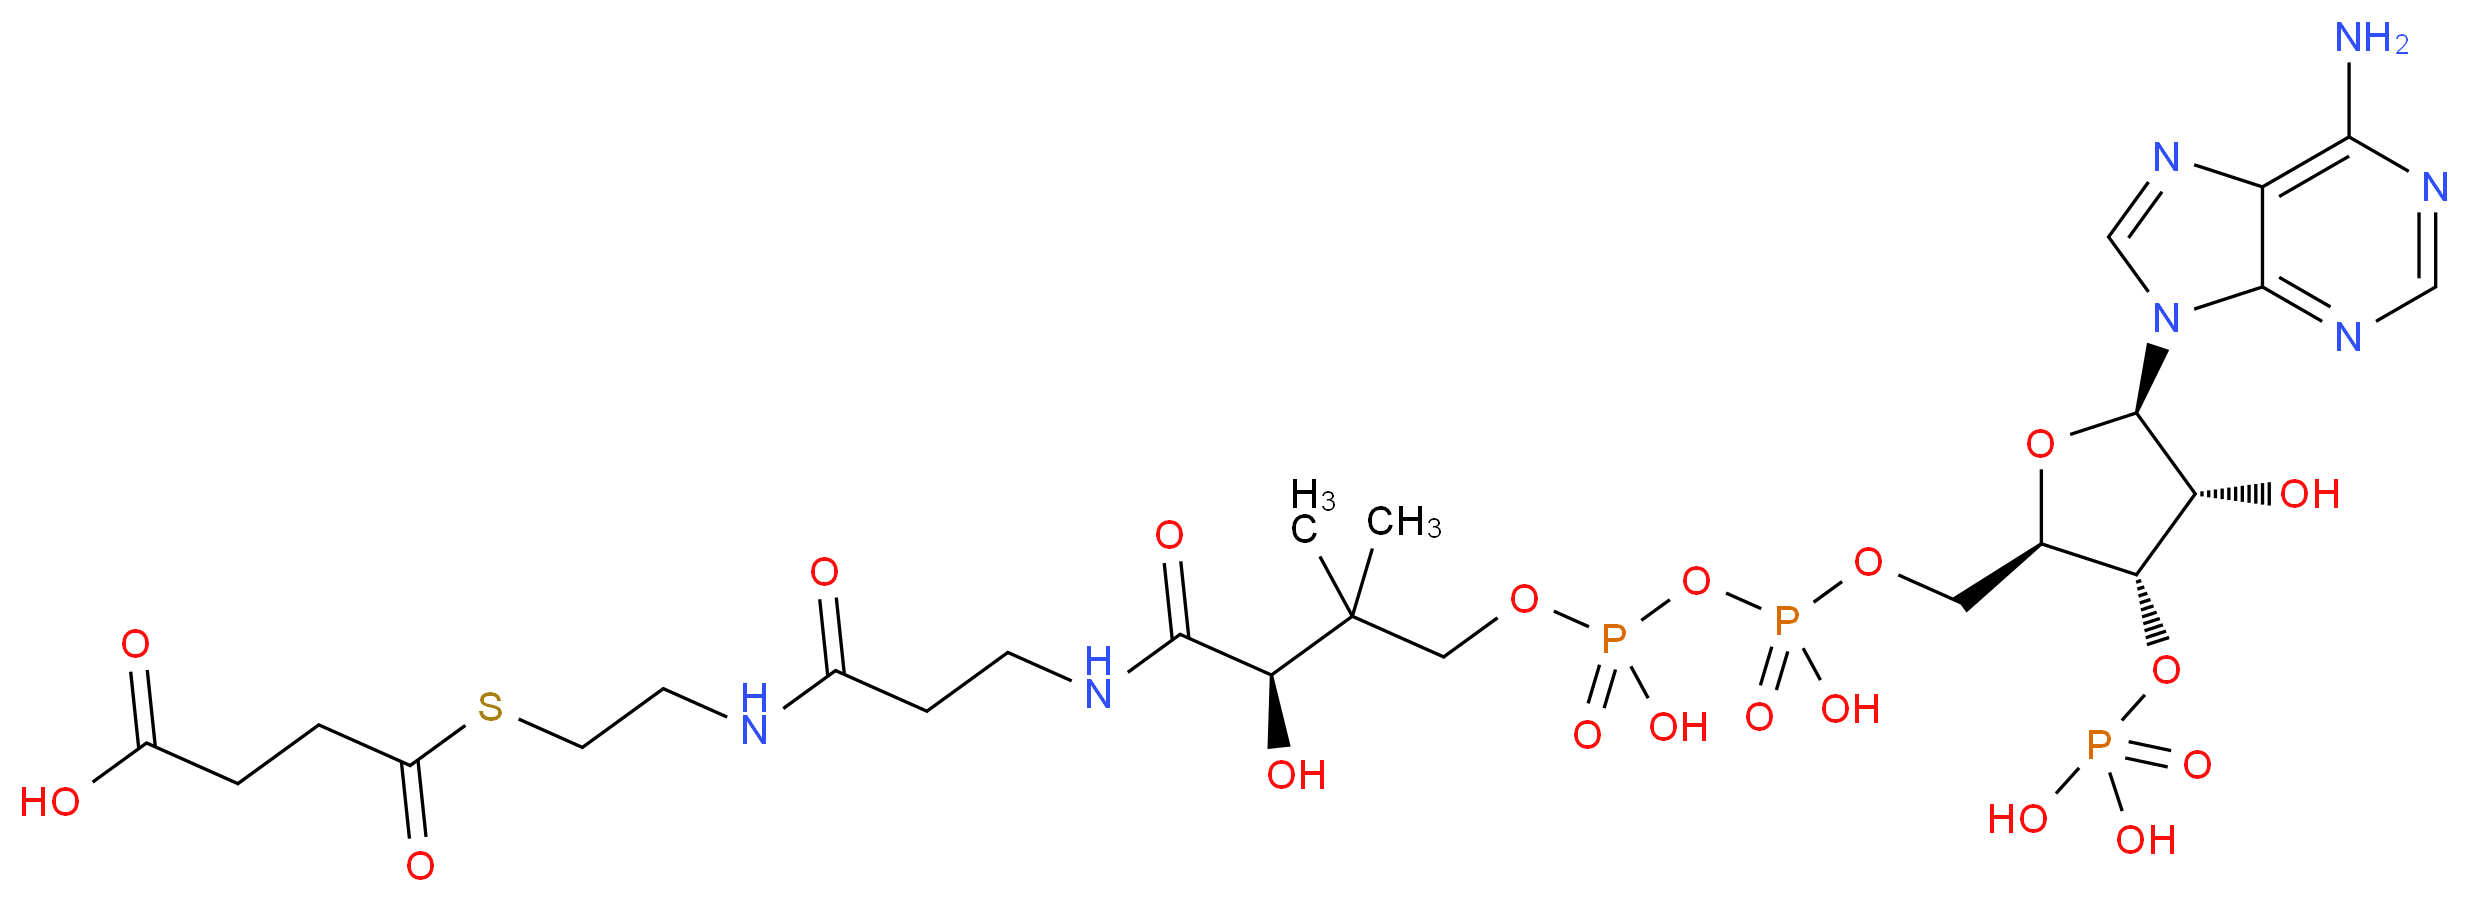 604-98-8 molecular structure